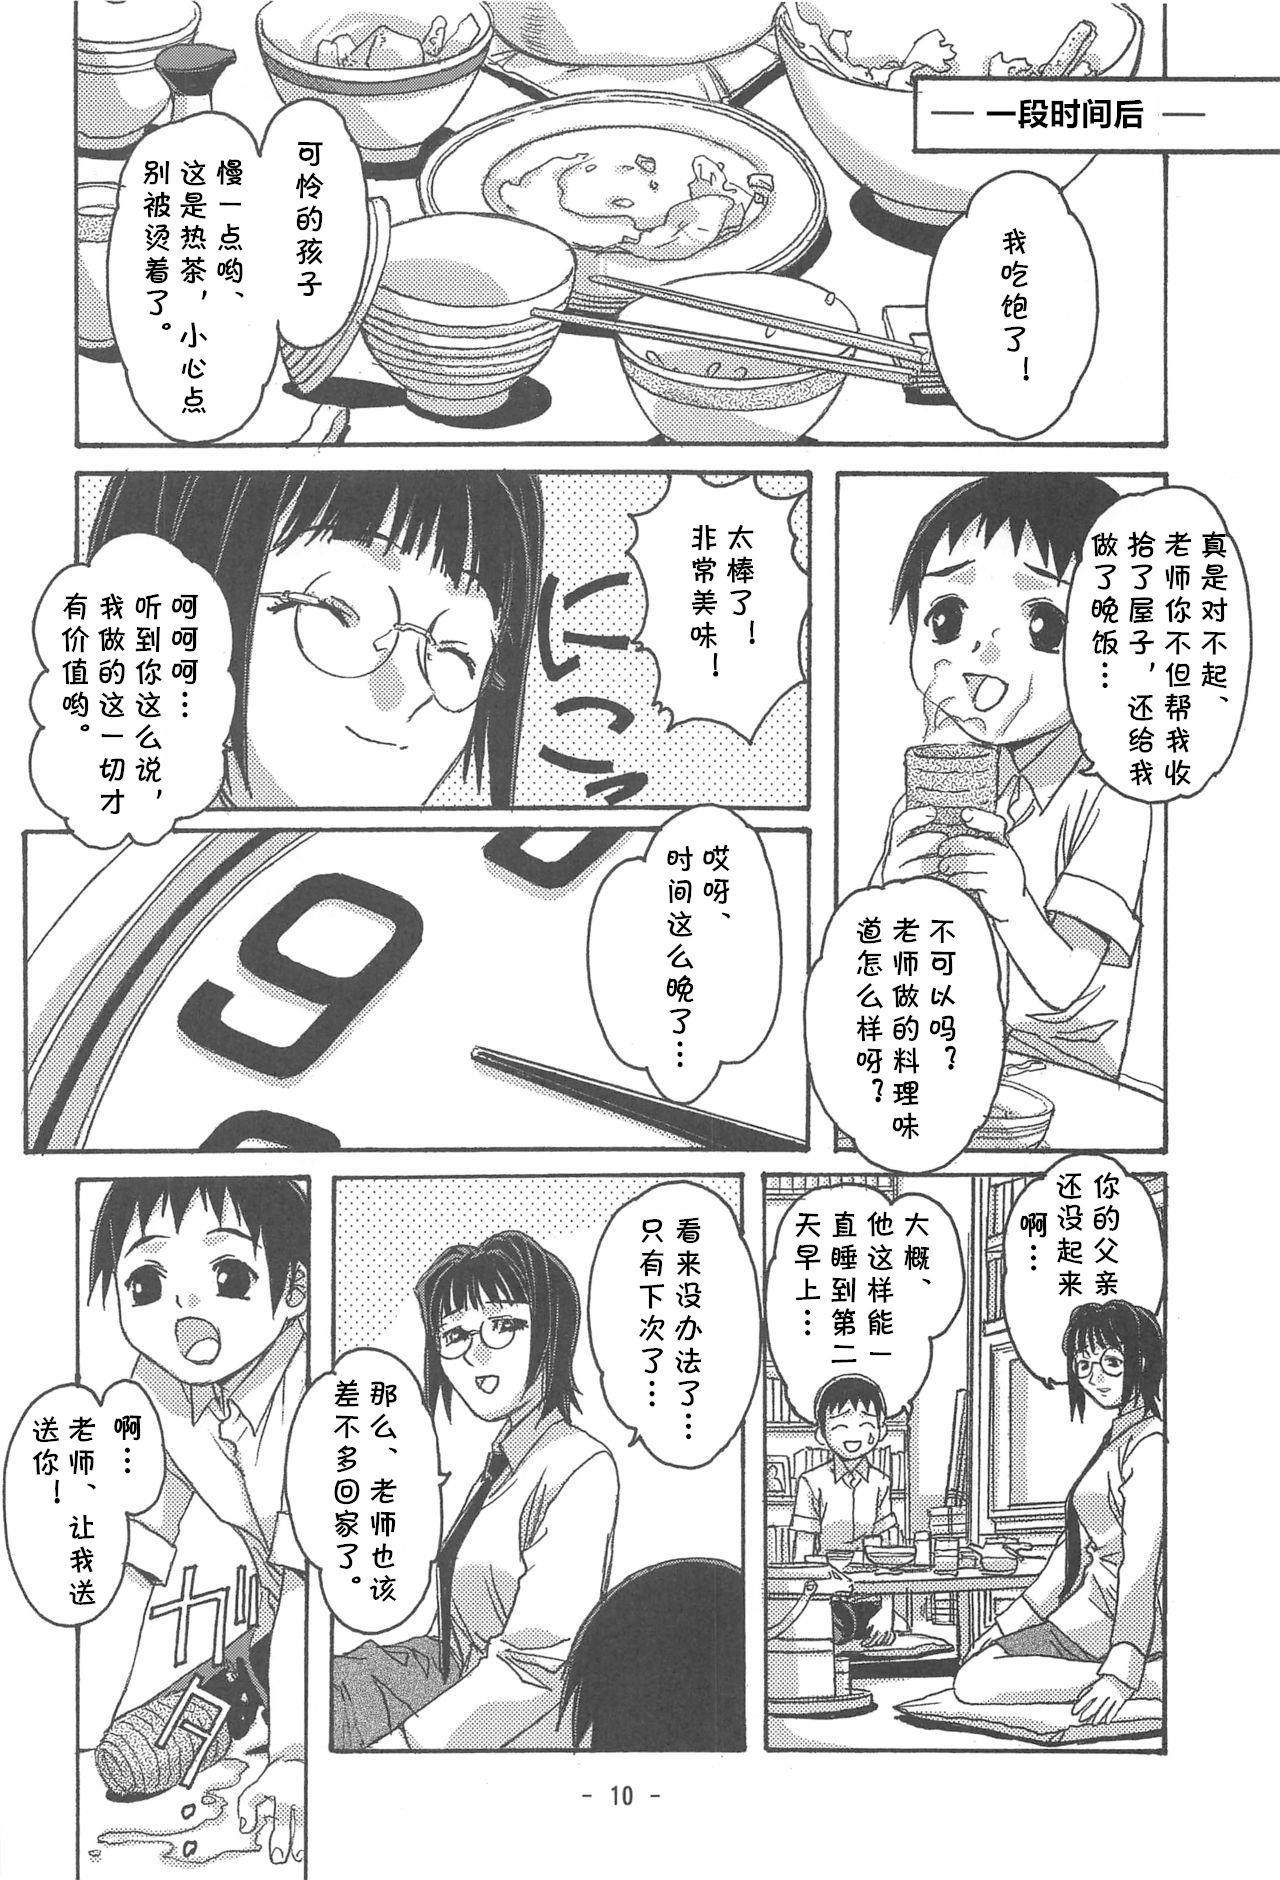 Bisex Otonano Do-wa Vol. 16 - Original Hardon - Page 7